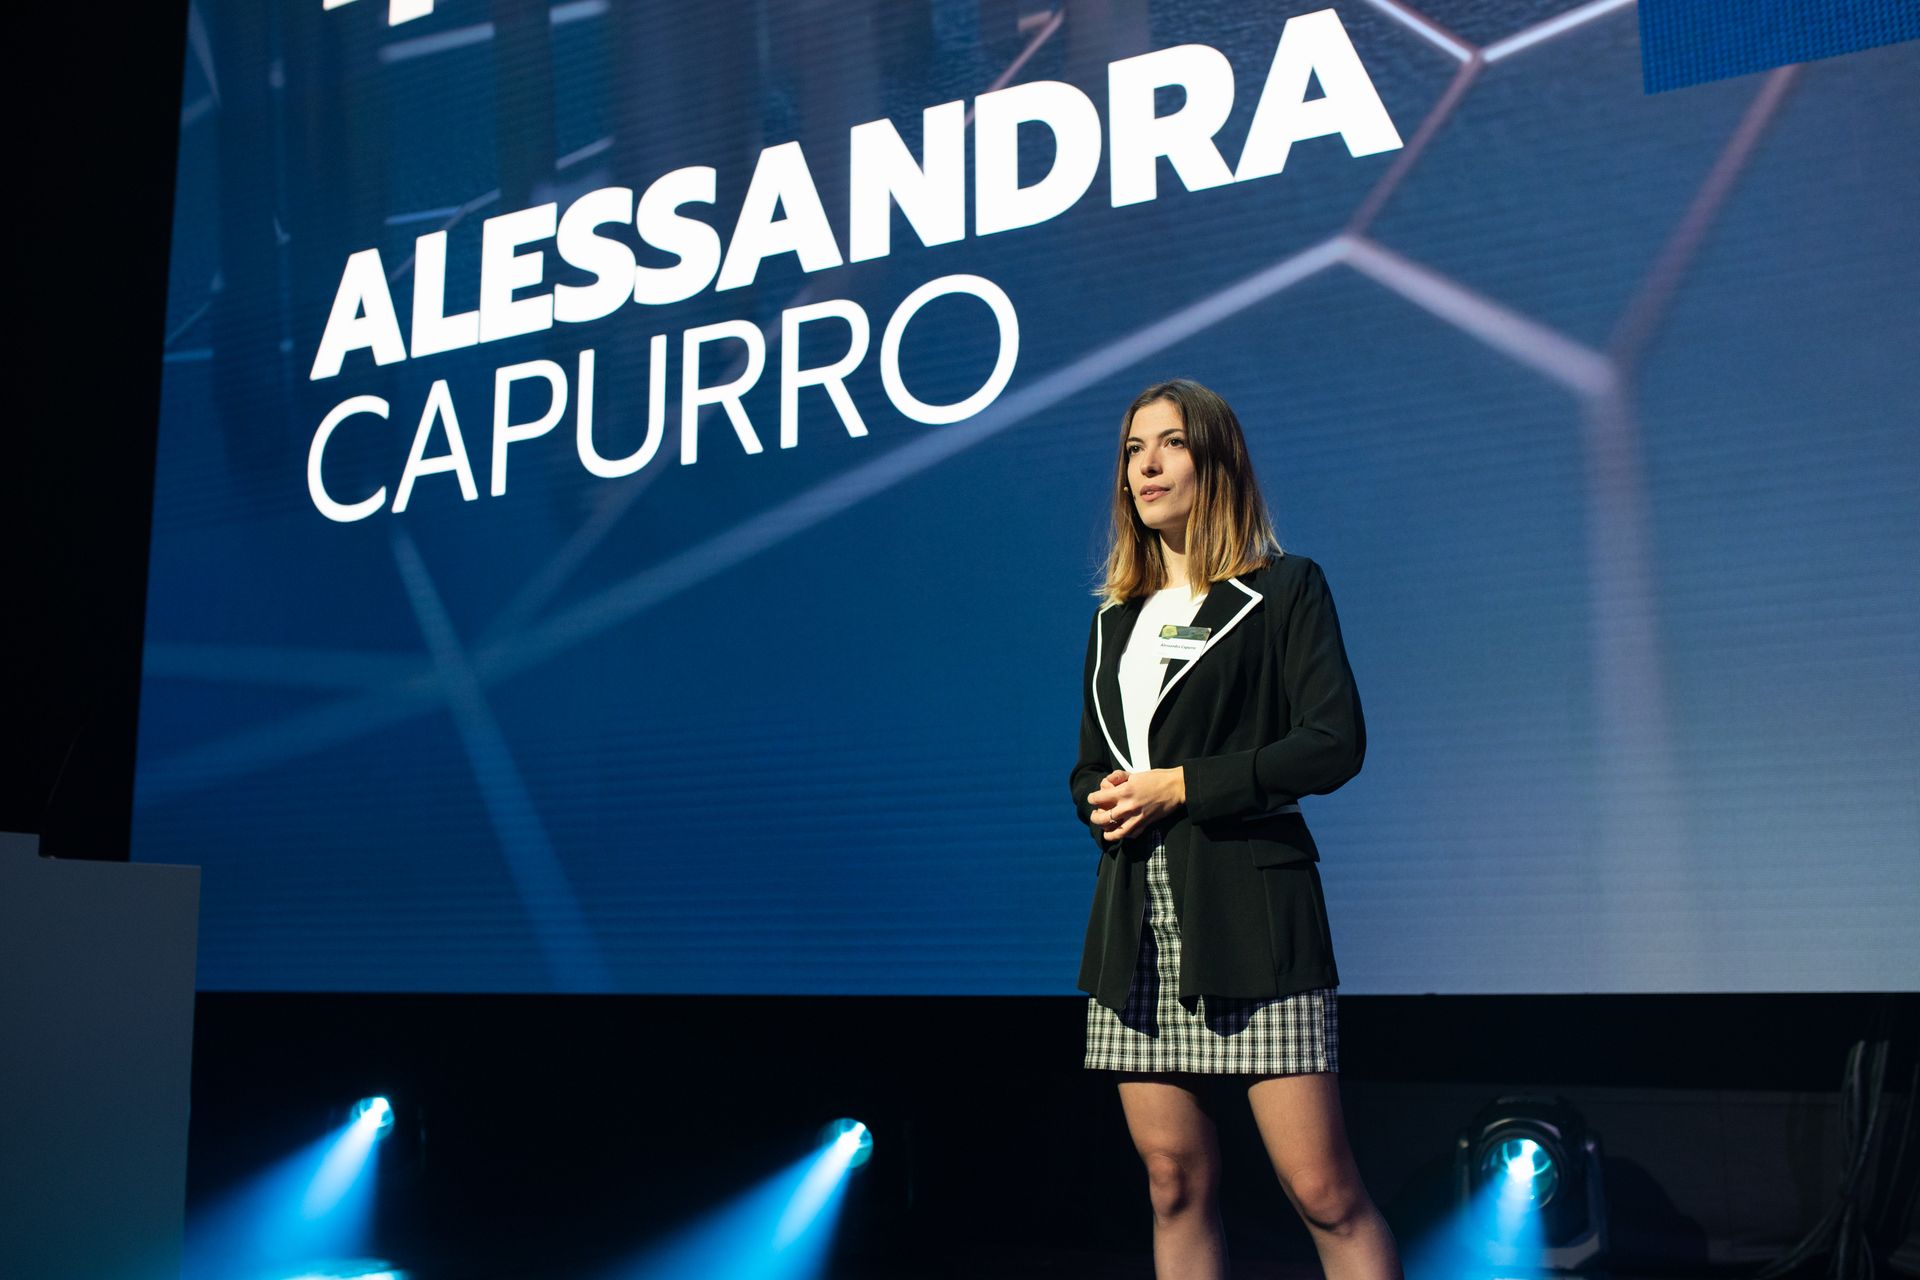 أليساندرا كابورو ، الحائزة على تصنيف "Nextgen Hero" ، في حفل توزيع جوائز "جائزة الاقتصاد الرقمي" في سويسرا